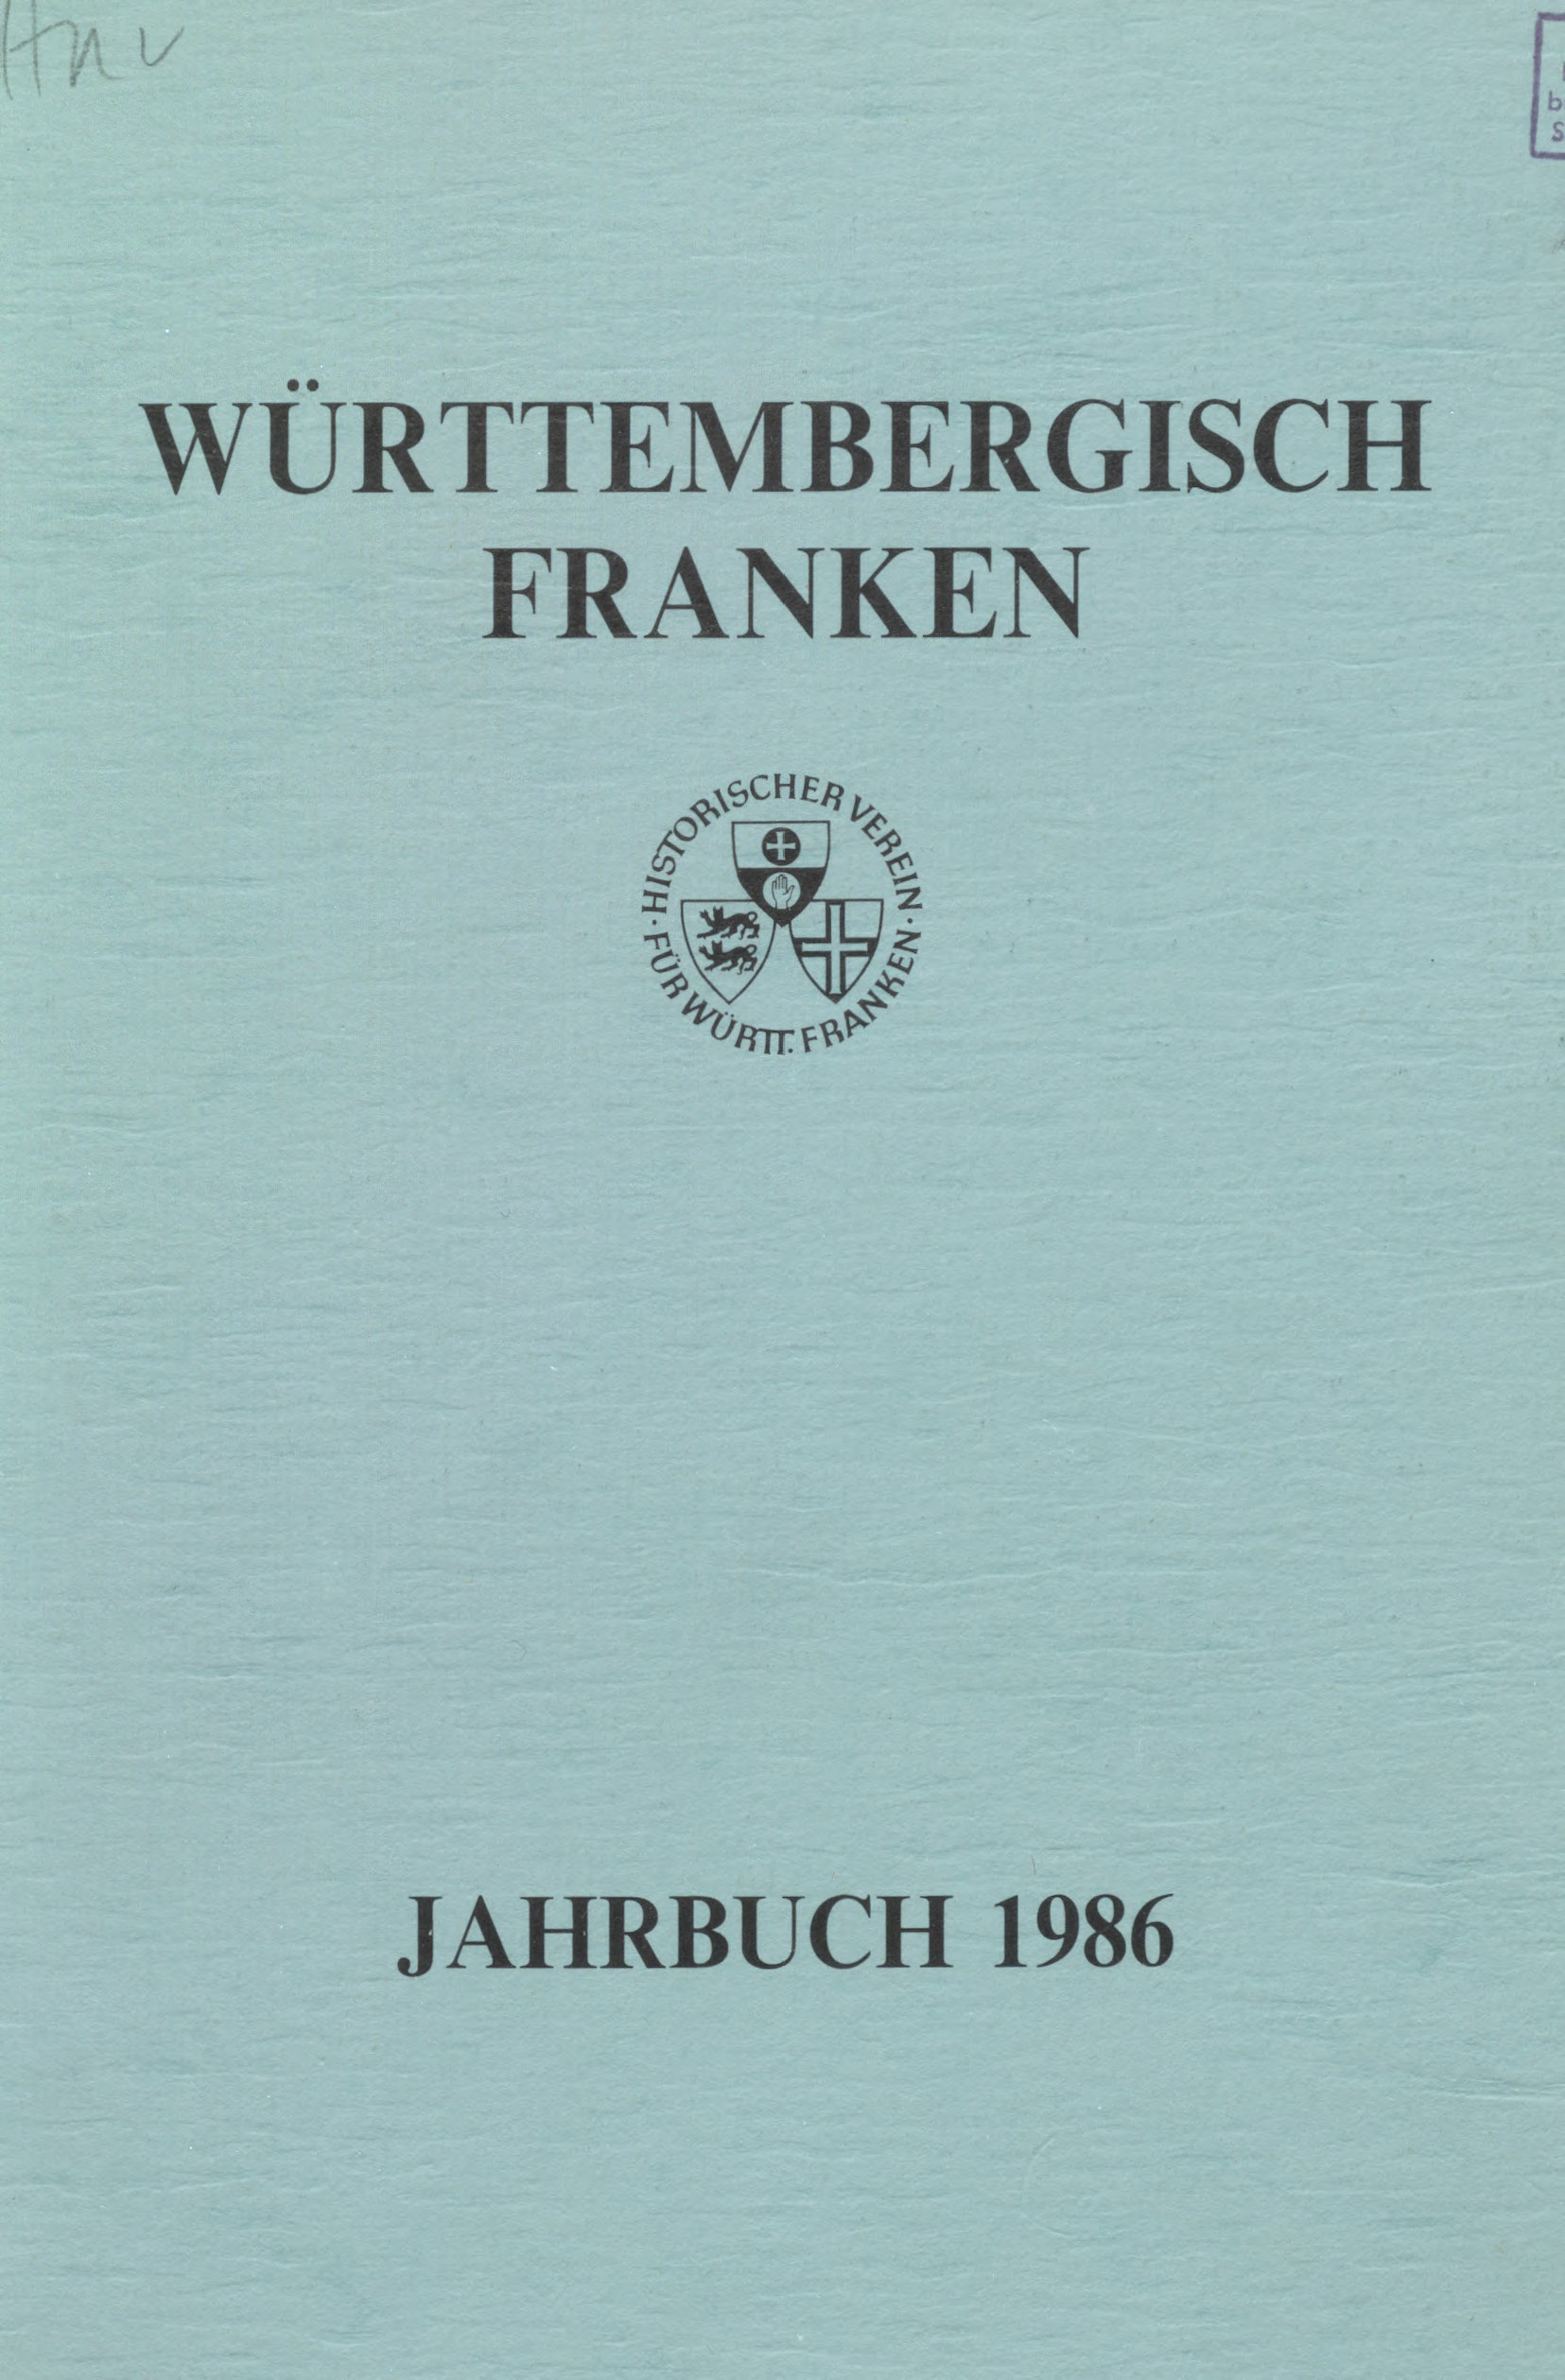                     Ansehen Bd. 70 (1986): Württembergisch Franken
                